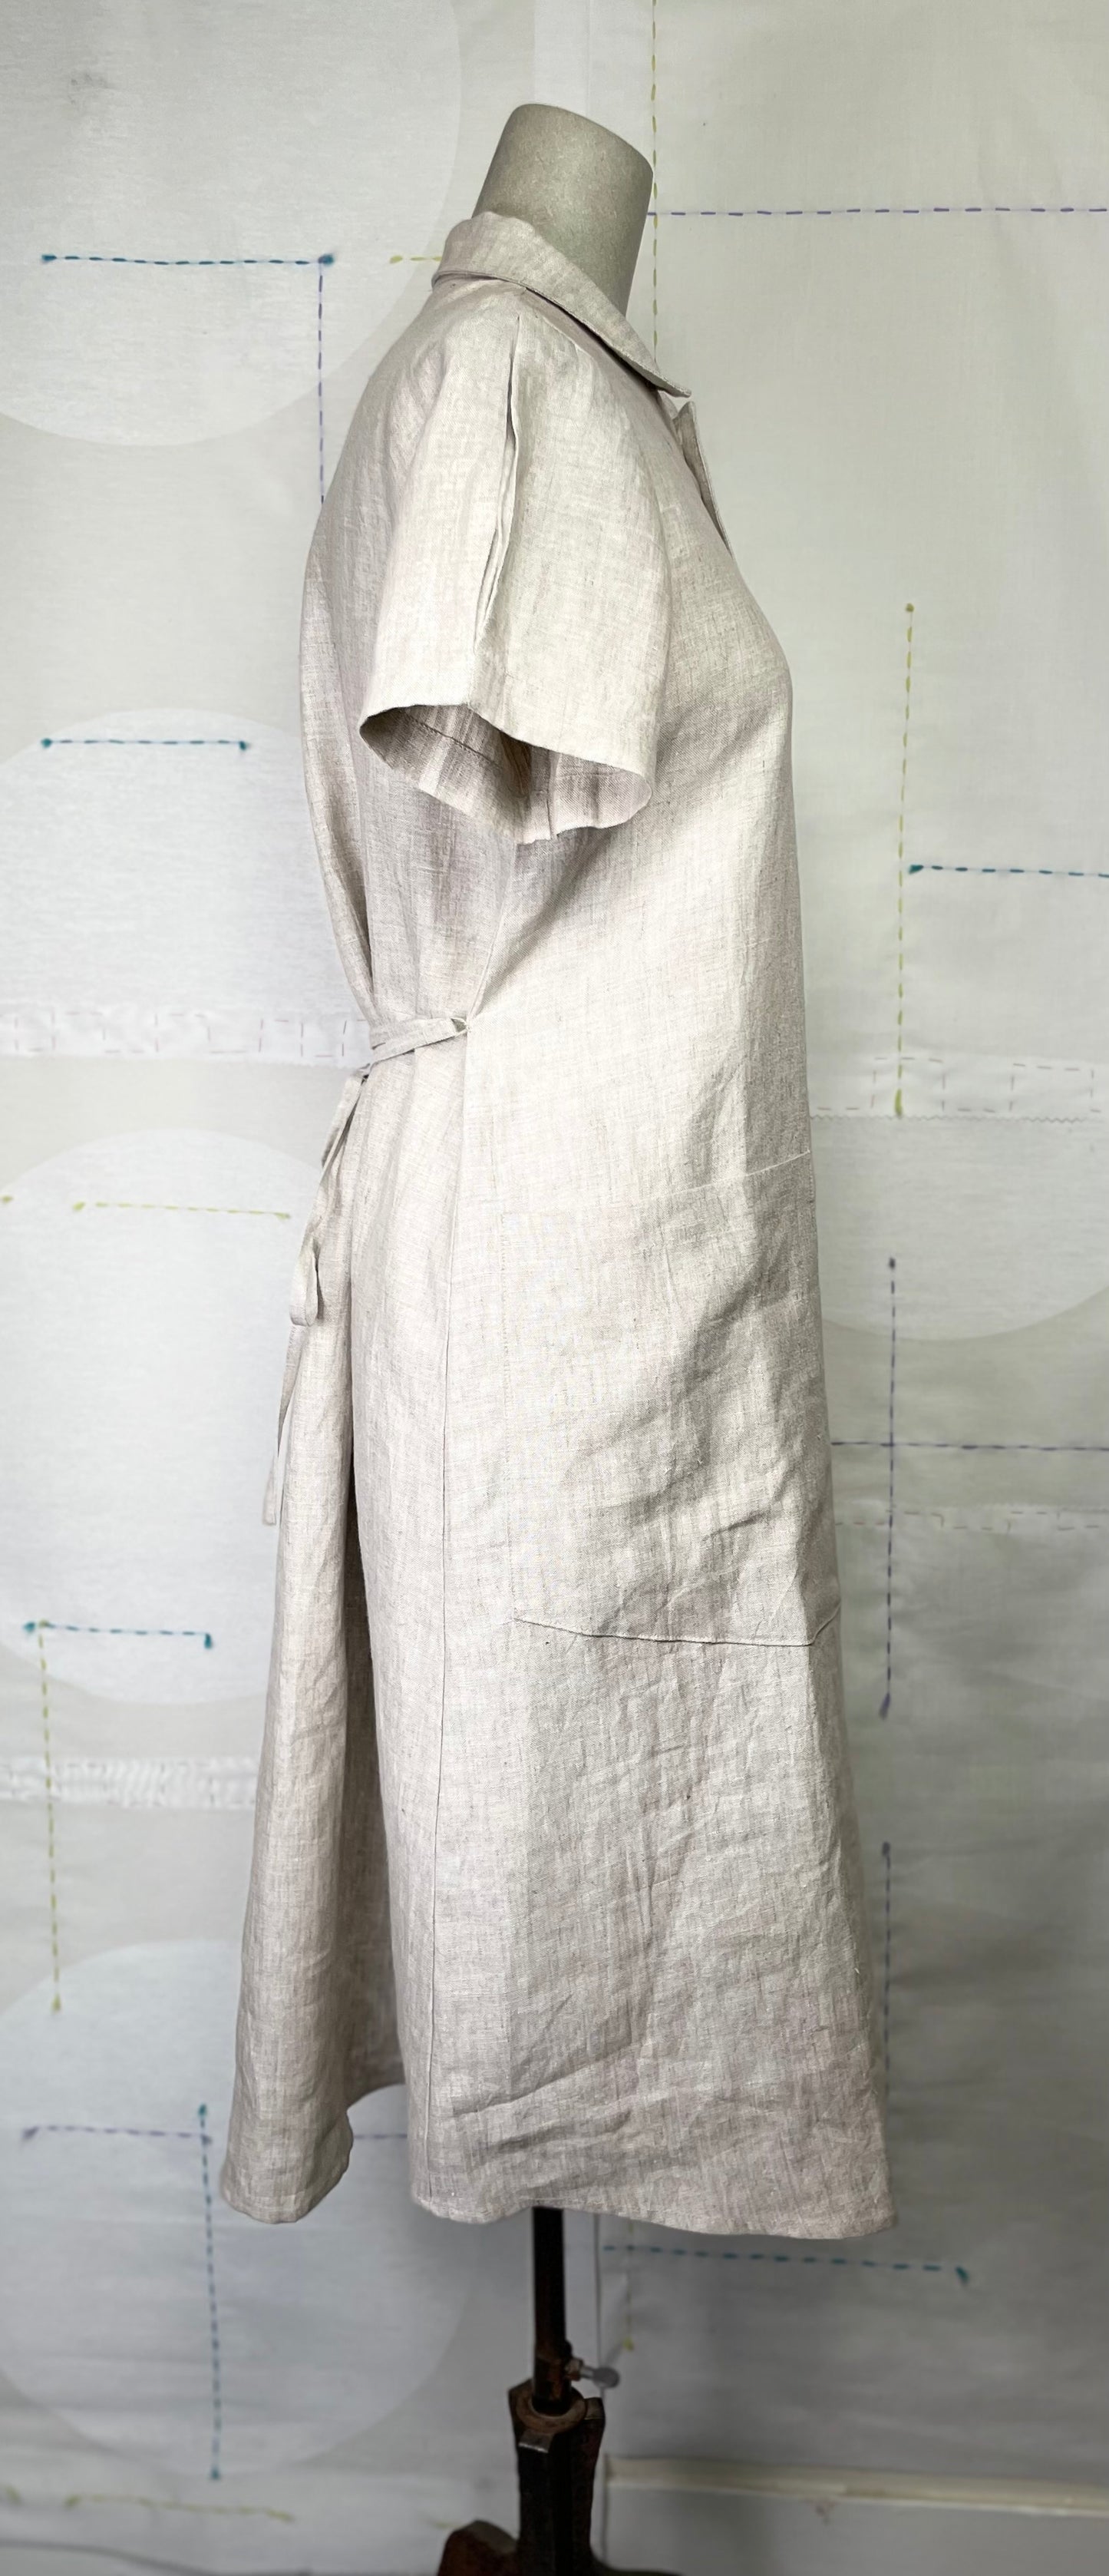 UQNQTU  ~  SS Shirt Dress - Natural Linen